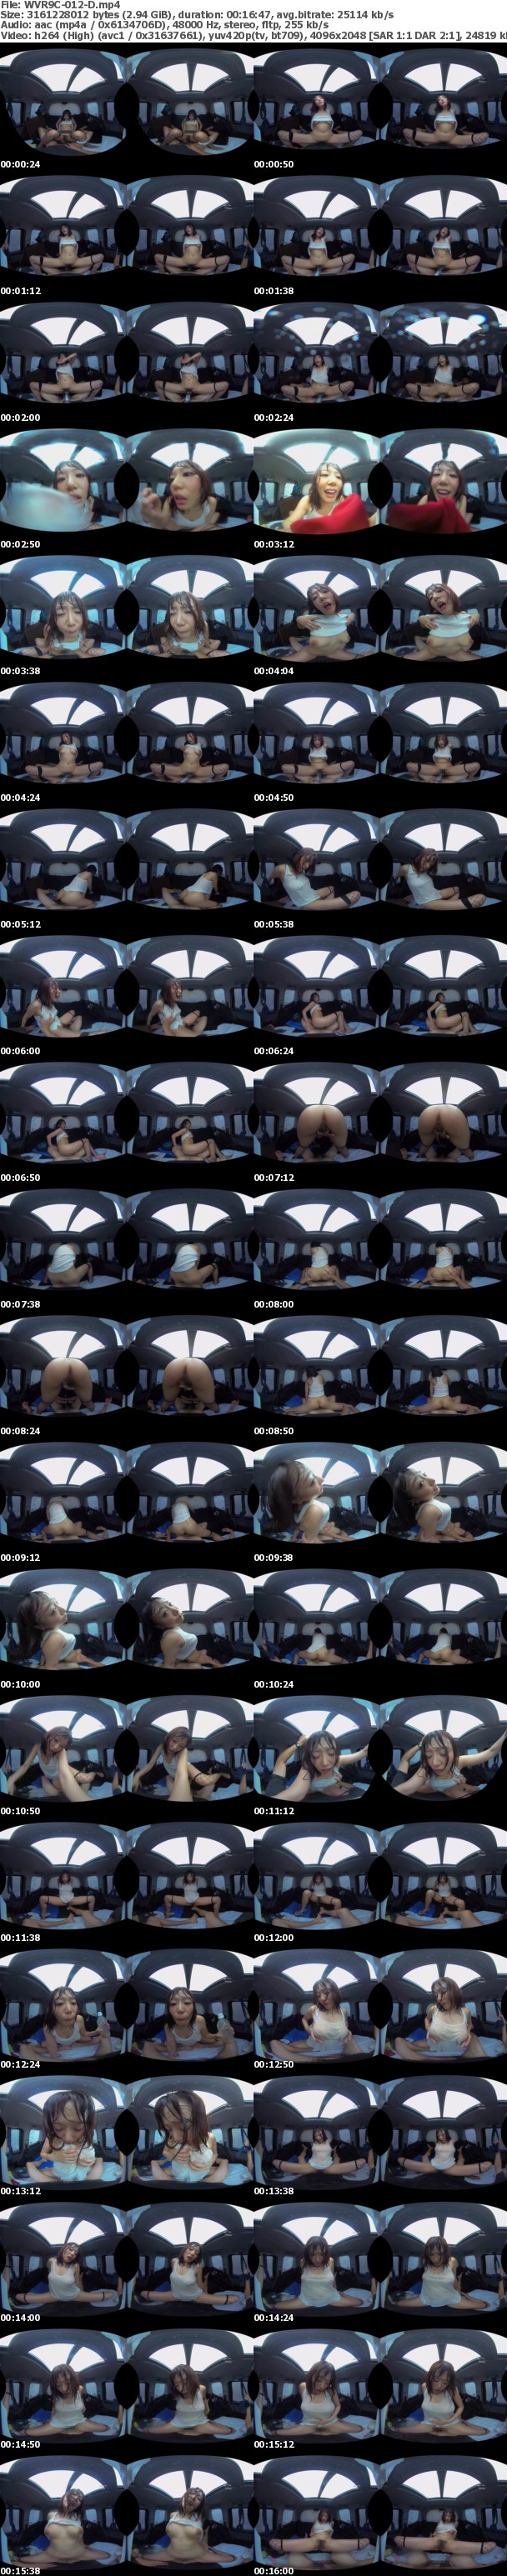 (VR) WVR9C-012 完全リマスター高精細VR 真夏の炎天下の狭い車内で汗だくになって肉欲系カーセックスしまくりました 永久保存版 阿部乃みく 浜崎真緒